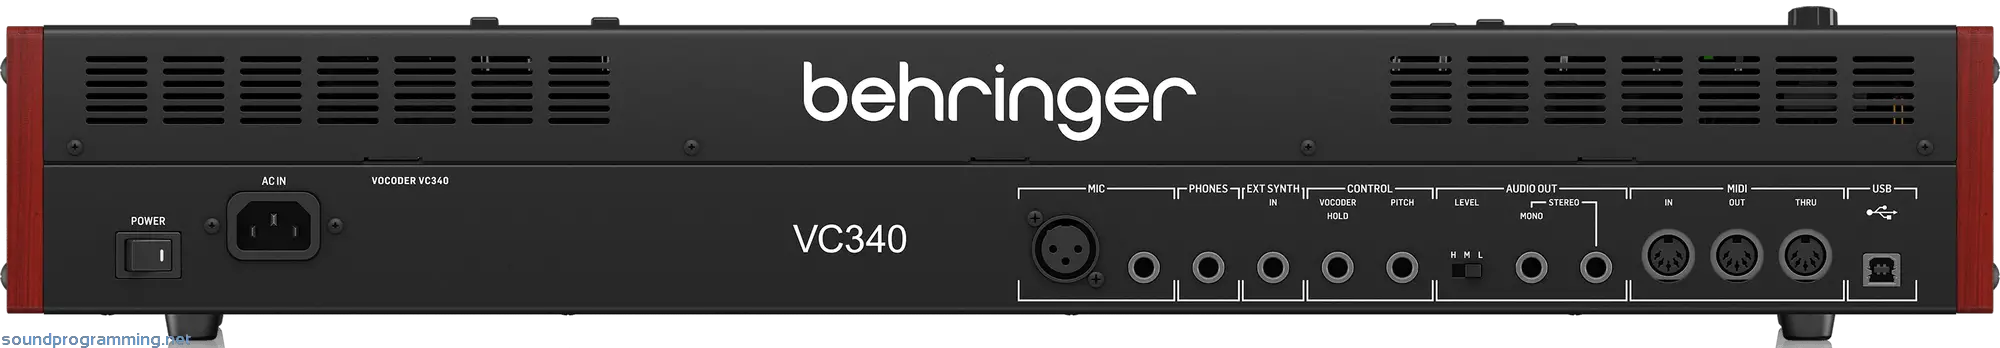 Behringer Vocoder VC340 Back View